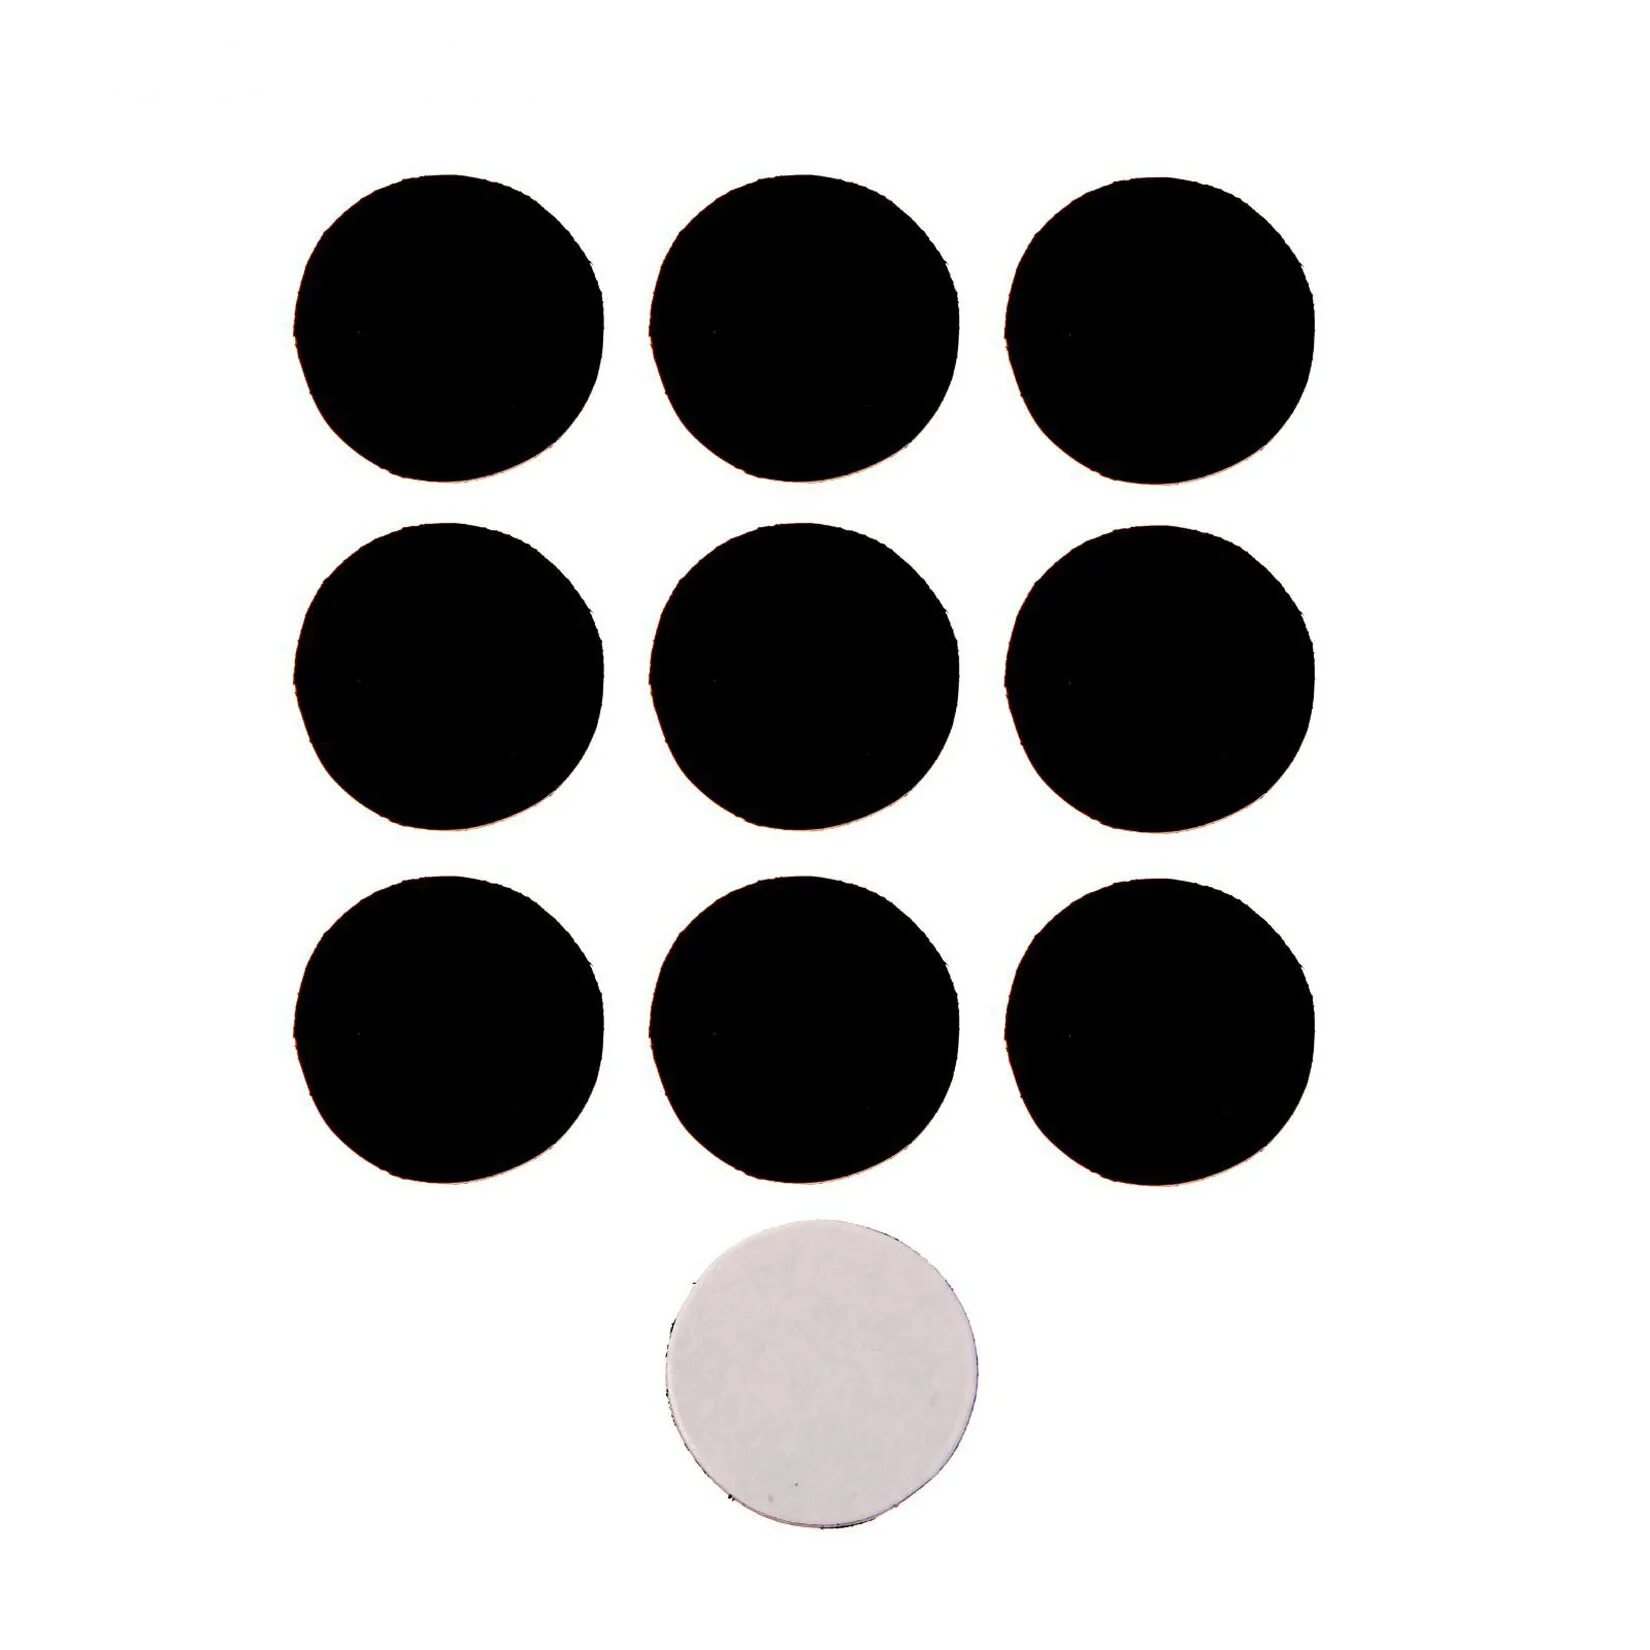 Много маленьких кружков. Черный круг. Черные кружочки. Много кругов. Трафарет круги.